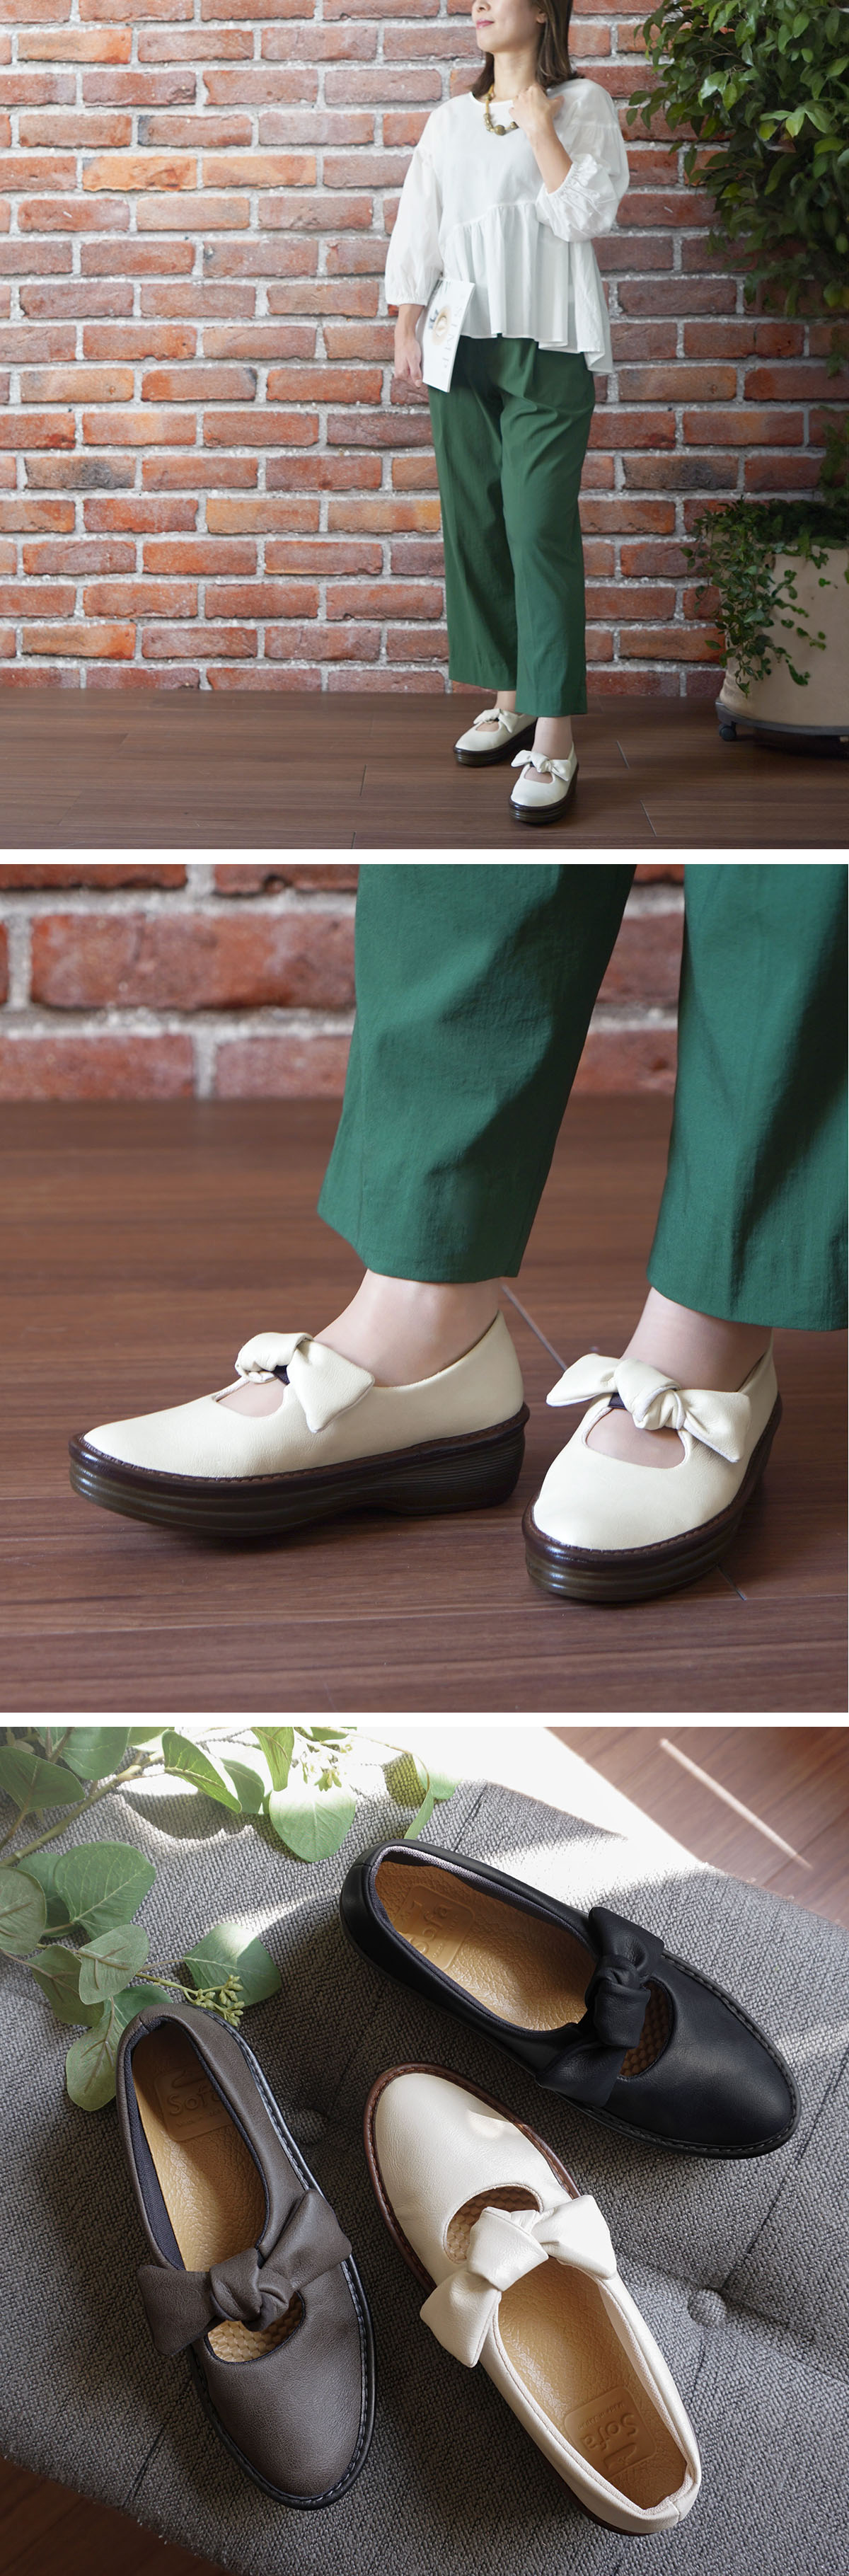 リボンシューズ 厚底 コンフォートシューズ フラット ぺたんこ 歩きやすい 疲れにくい 軽量 靴 日本製 アマンド